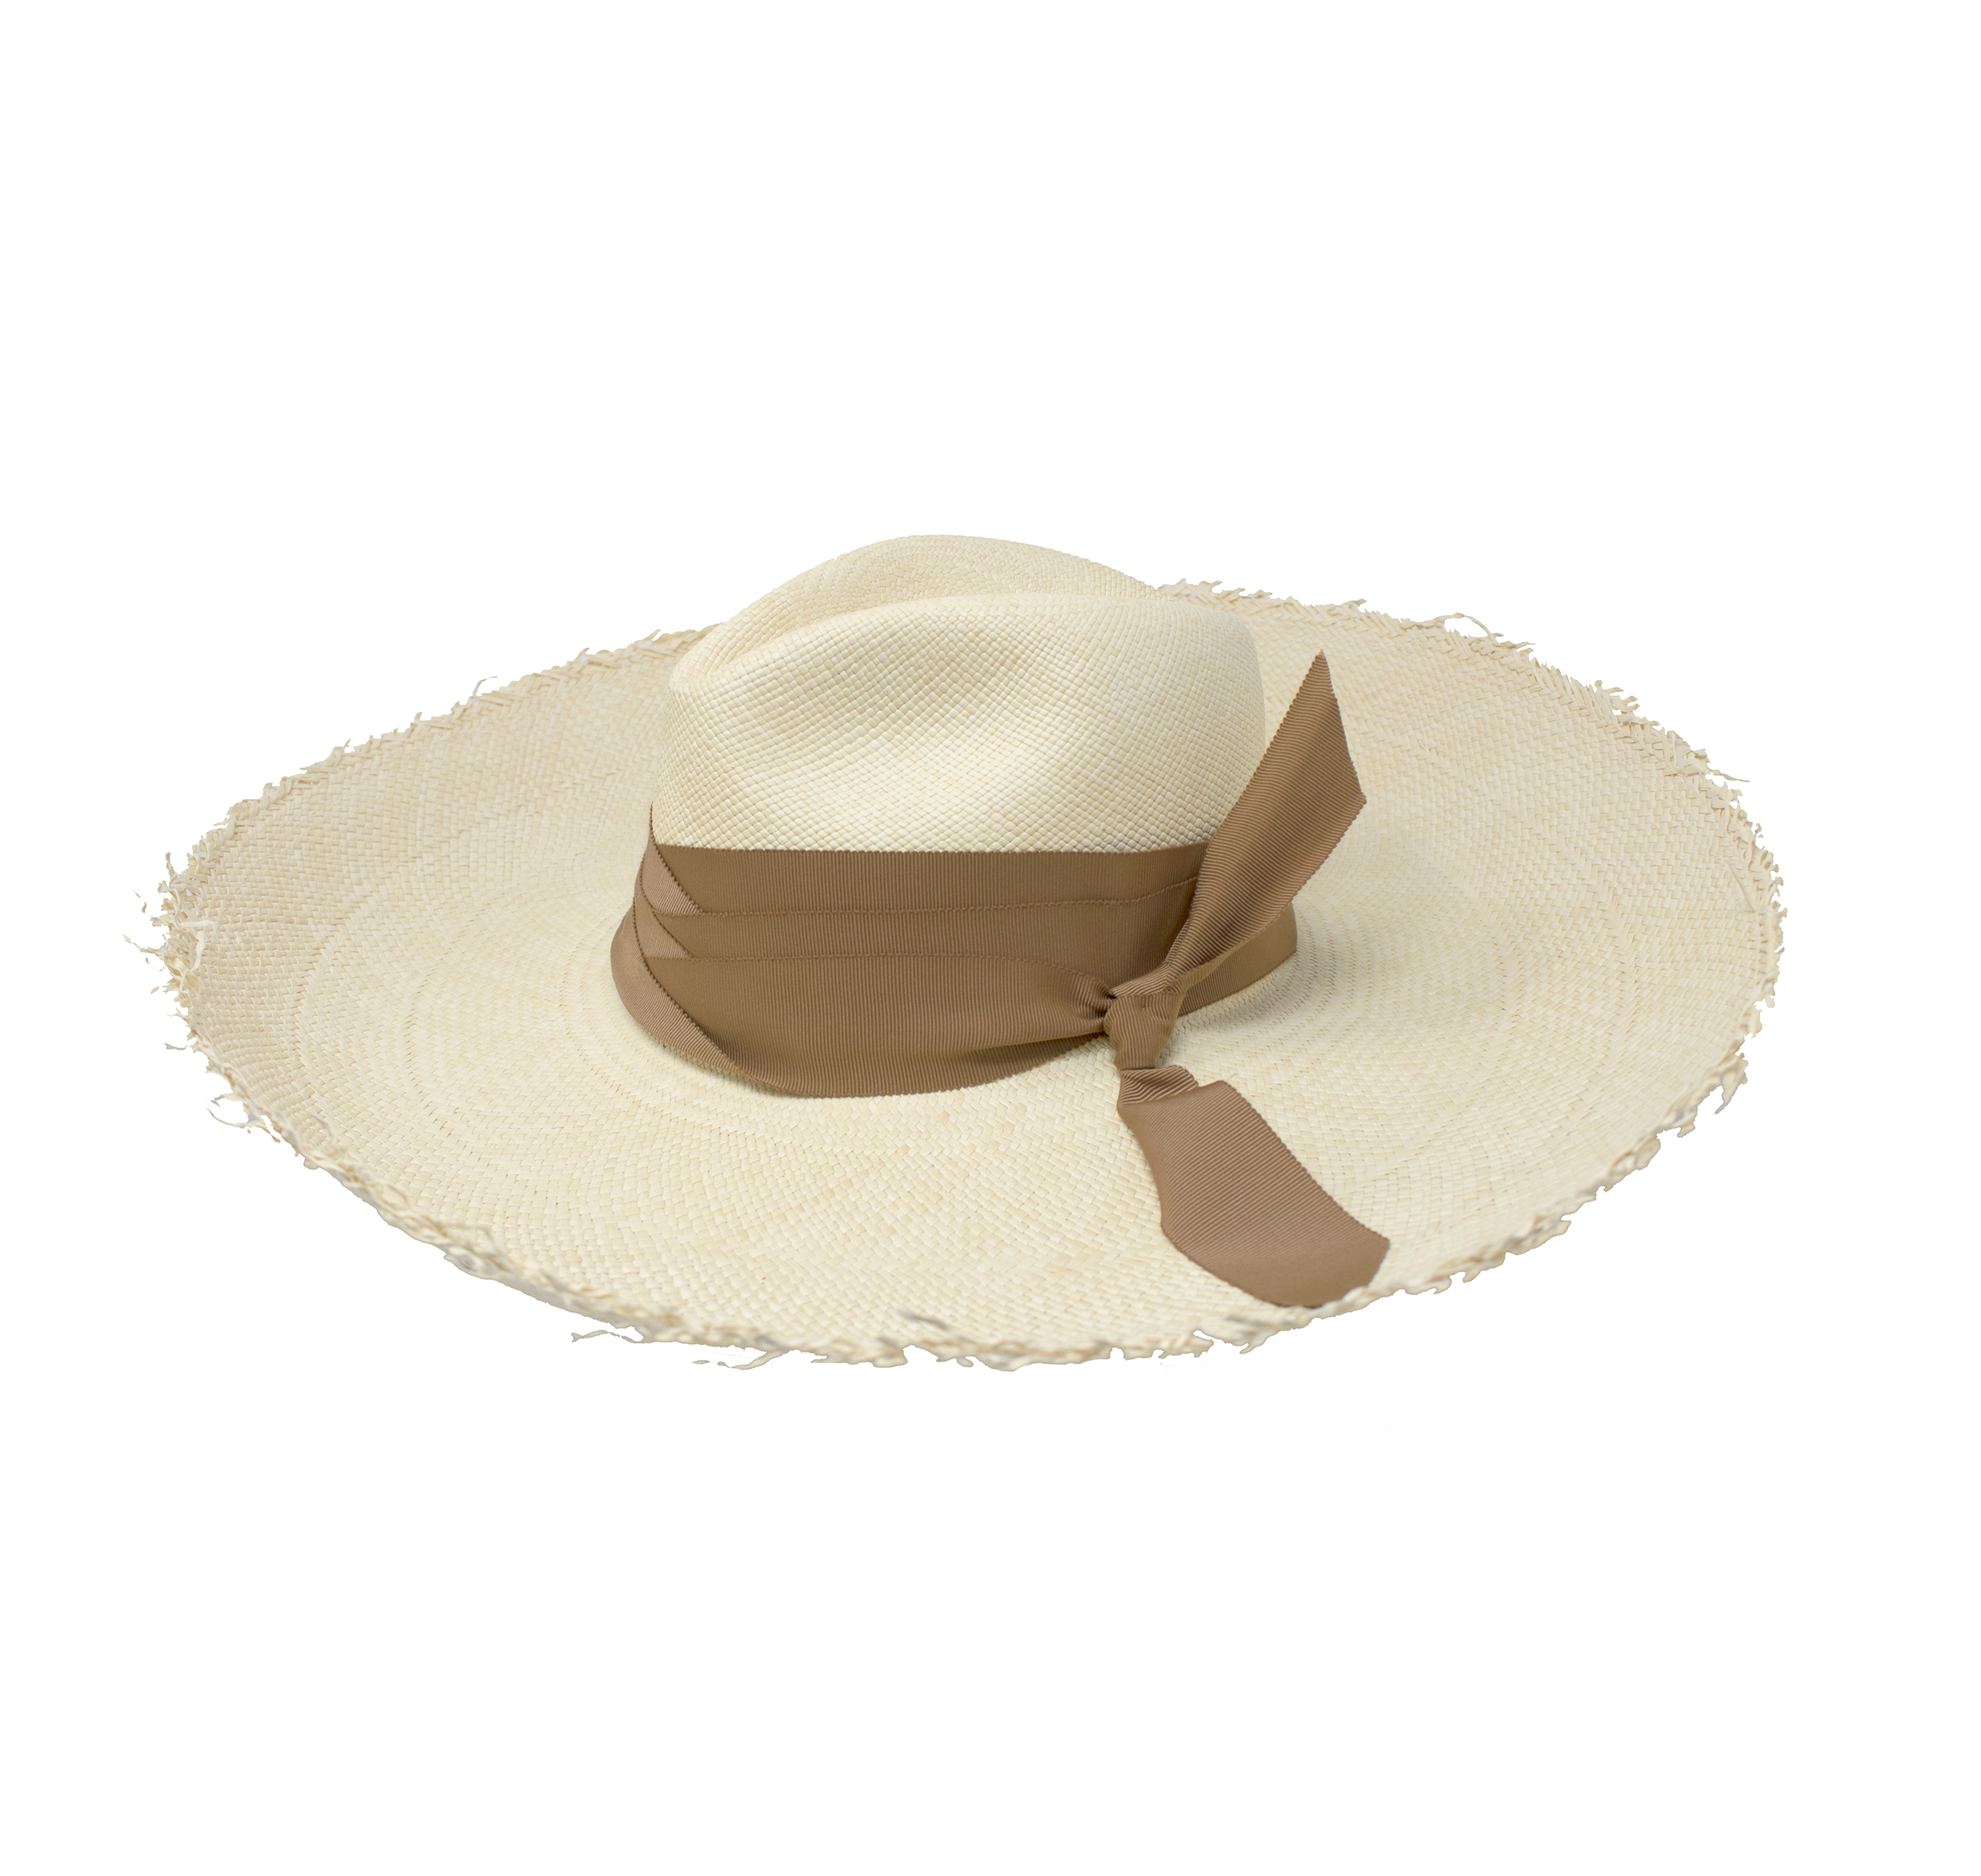 unisex summer wide brim panama hat breathable hat - CNCAPS